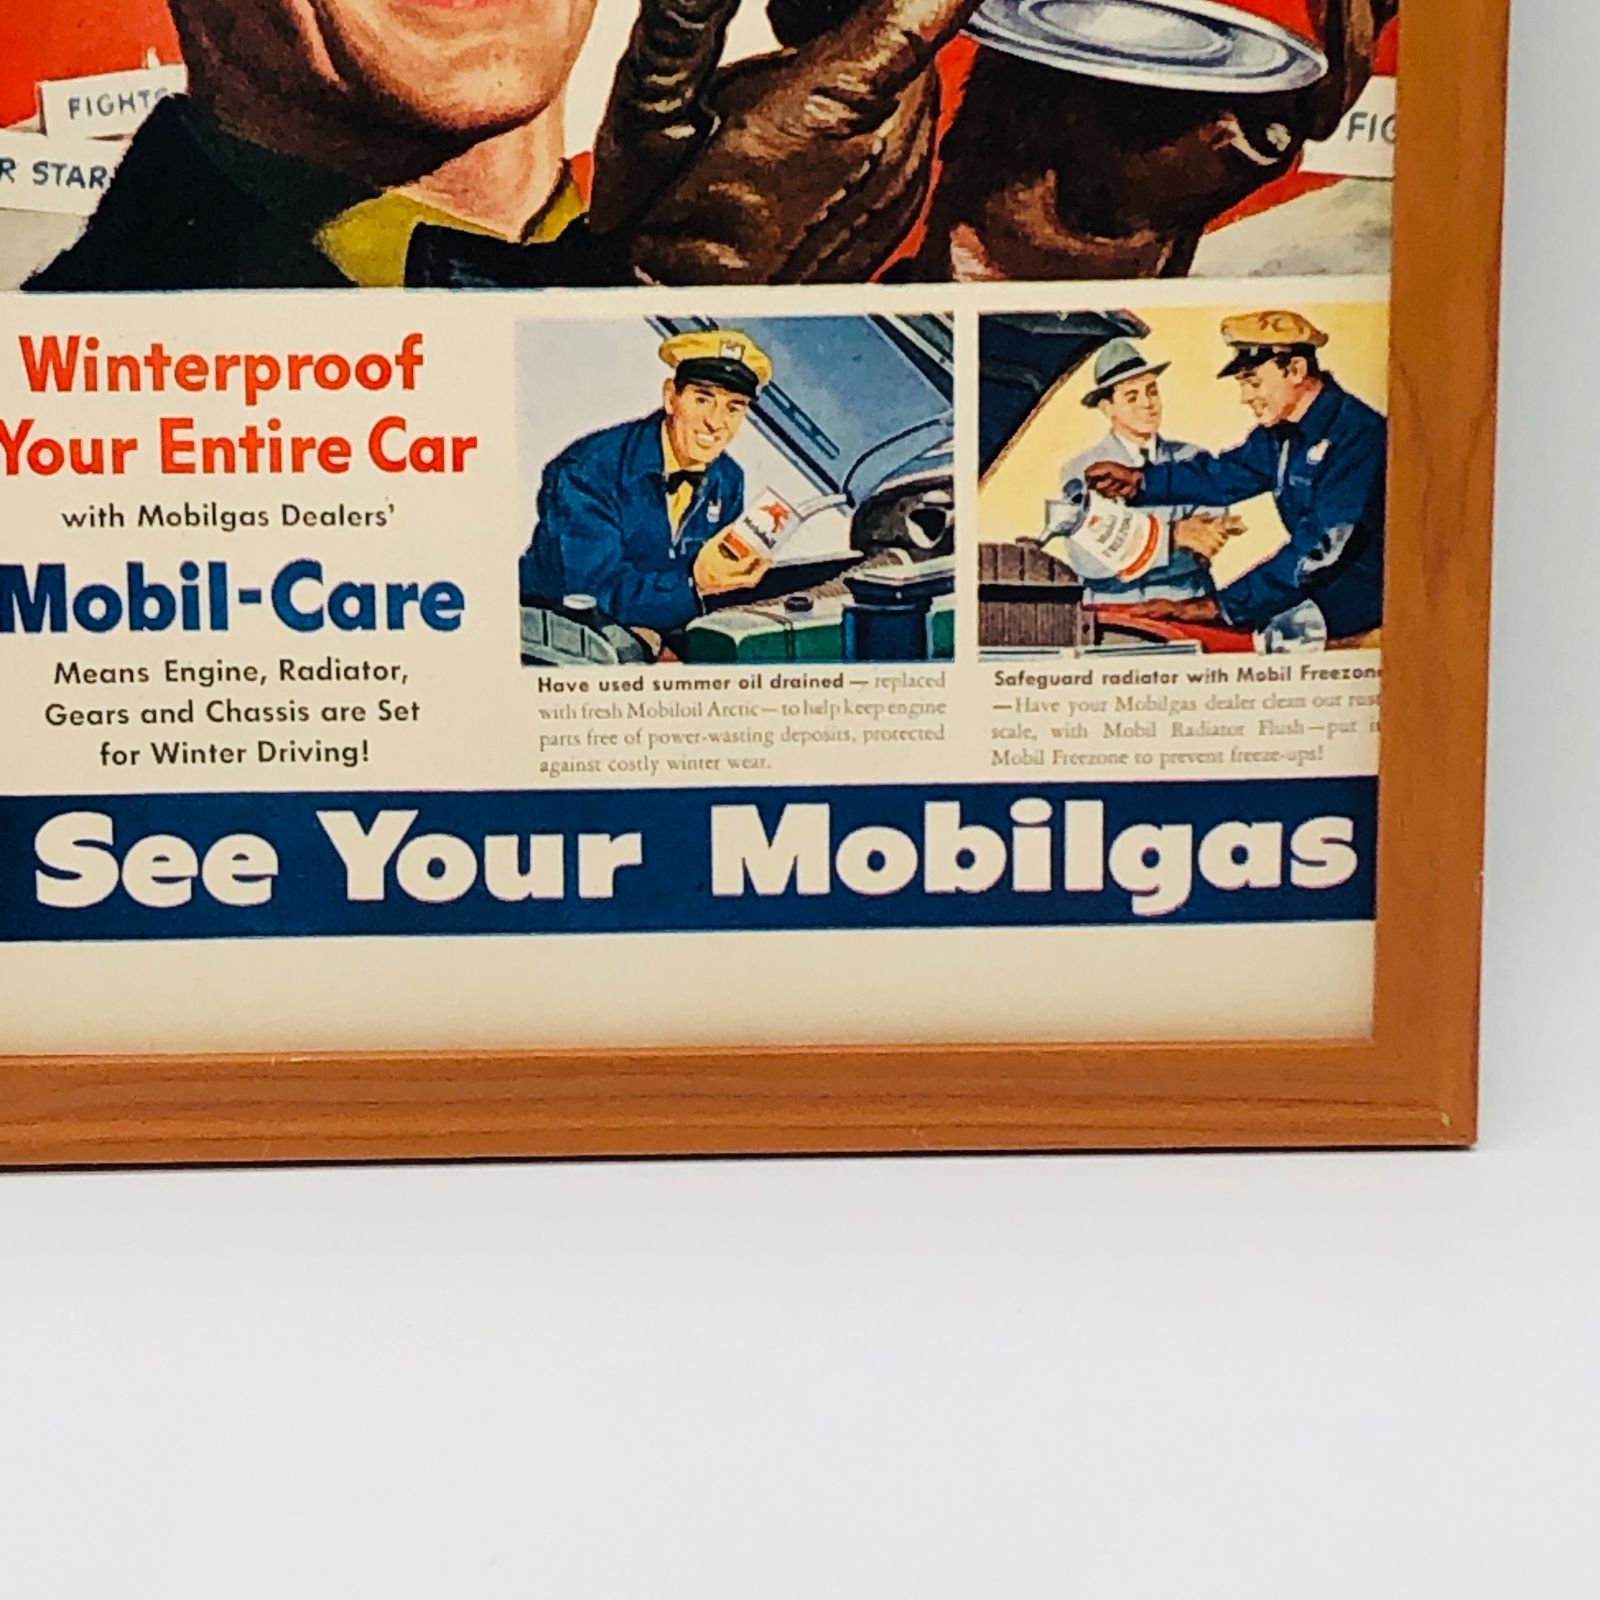 ビンテージ 広告 ポスター フレーム付 当時物 『 モービルオイル (MOBIL OIL) 』 1940's オリジナル アメリカ 輸入雑貨 ヴィンテージ  雑誌 アドバタイジング レトロ ( AZ1571 ) - メルカリ